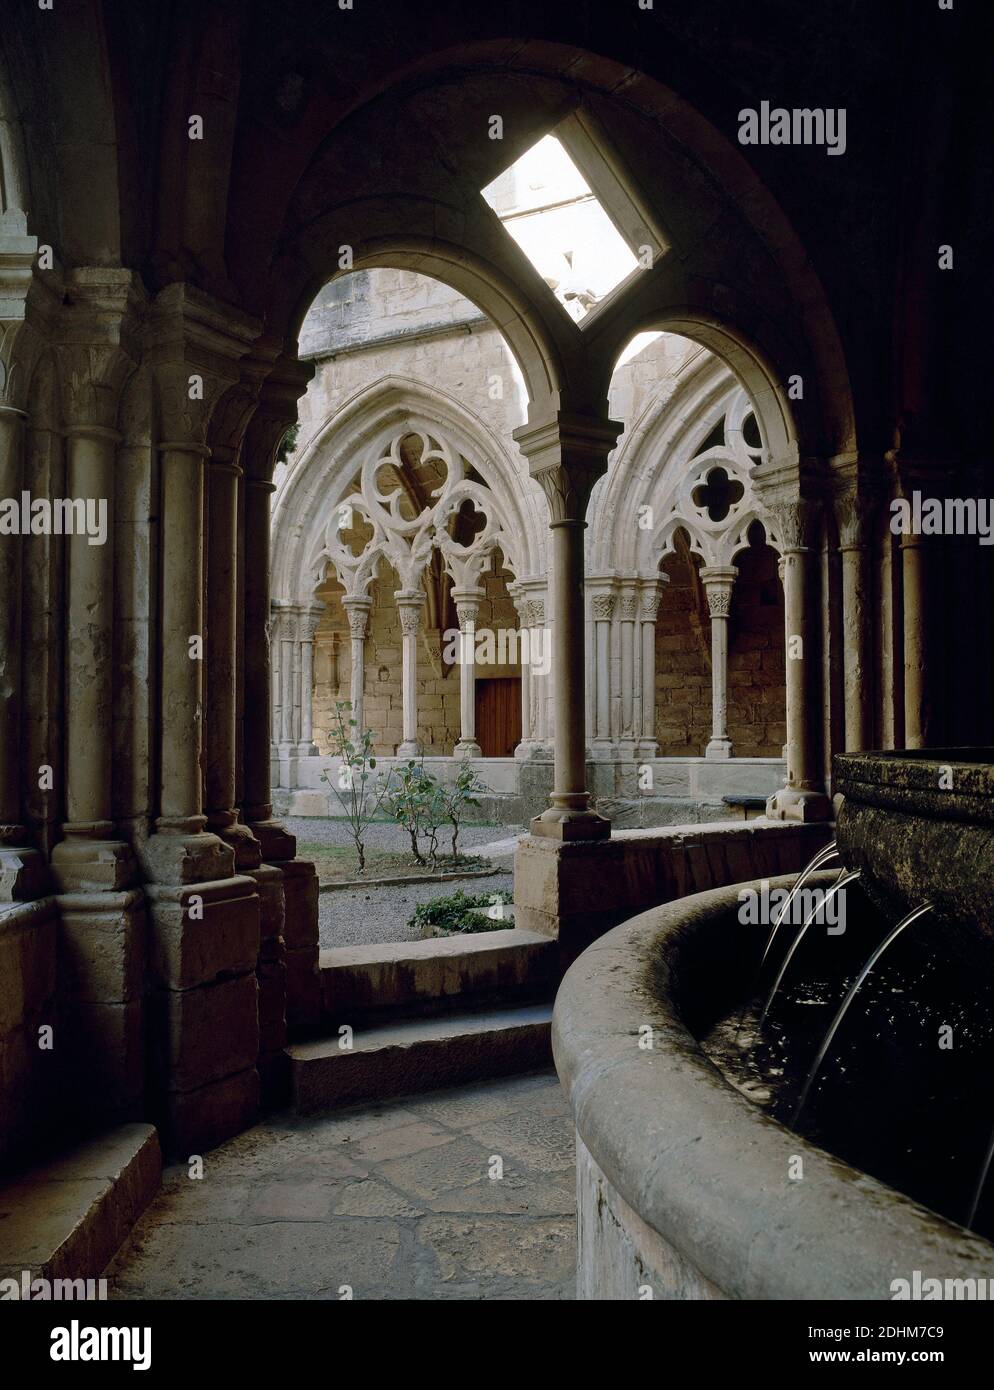 Spanien, Katalonien, Provinz Tarragona, Vimbodí. Königliches Kloster von Santa Maria de Poblet. Der Bau des Klosters begann im 12. Jahrhundert.der Lavabo und Brunnen, von den Mönchen für Reinigung und Waschen verwendet. Stockfoto